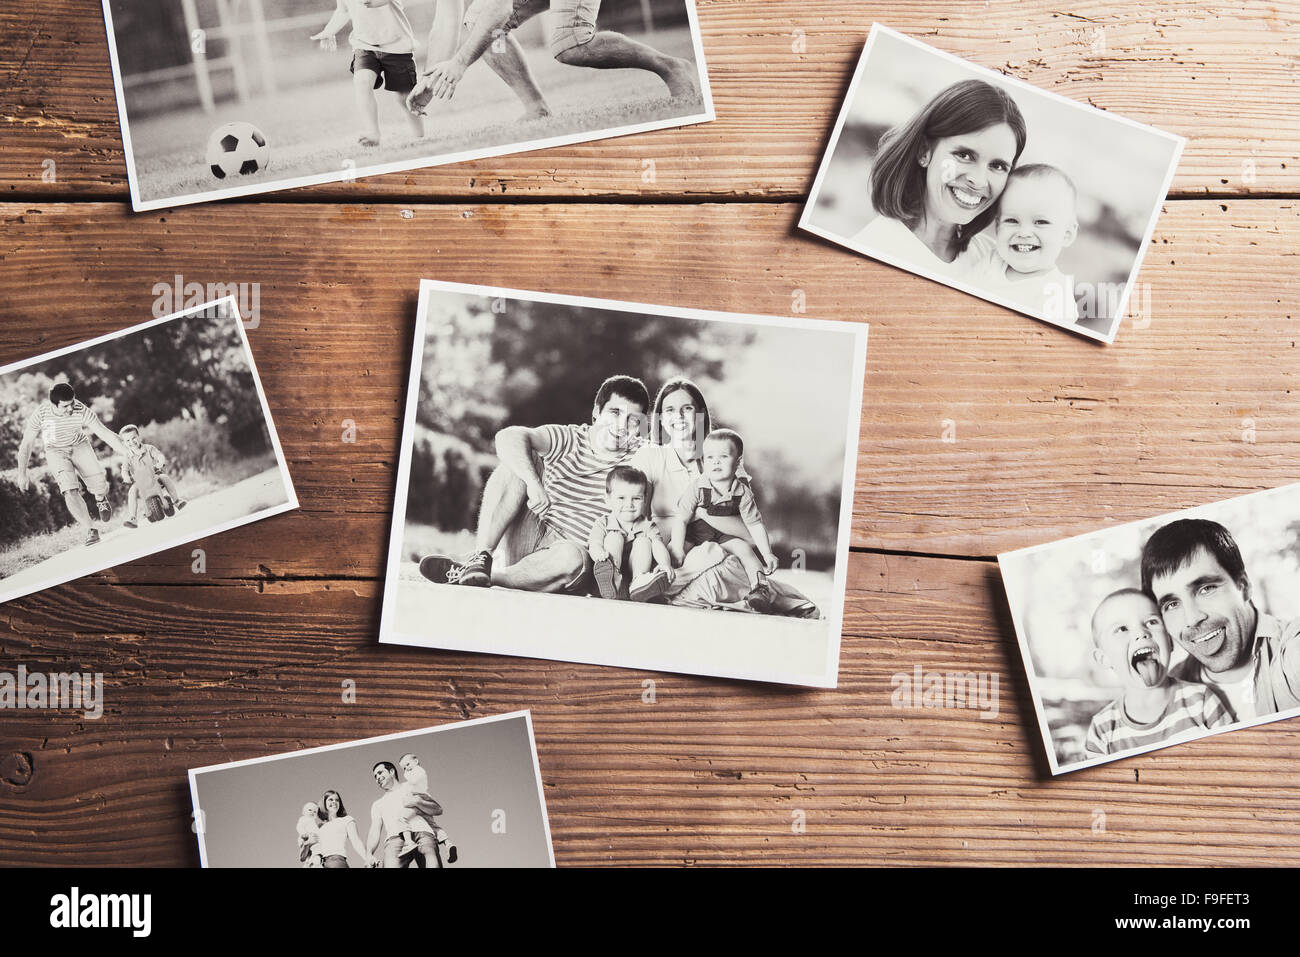 Schwarz / weiß Familienfotos auf einen Tisch gelegt. Studio auf hölzernen Hintergrund gedreht. Stockfoto